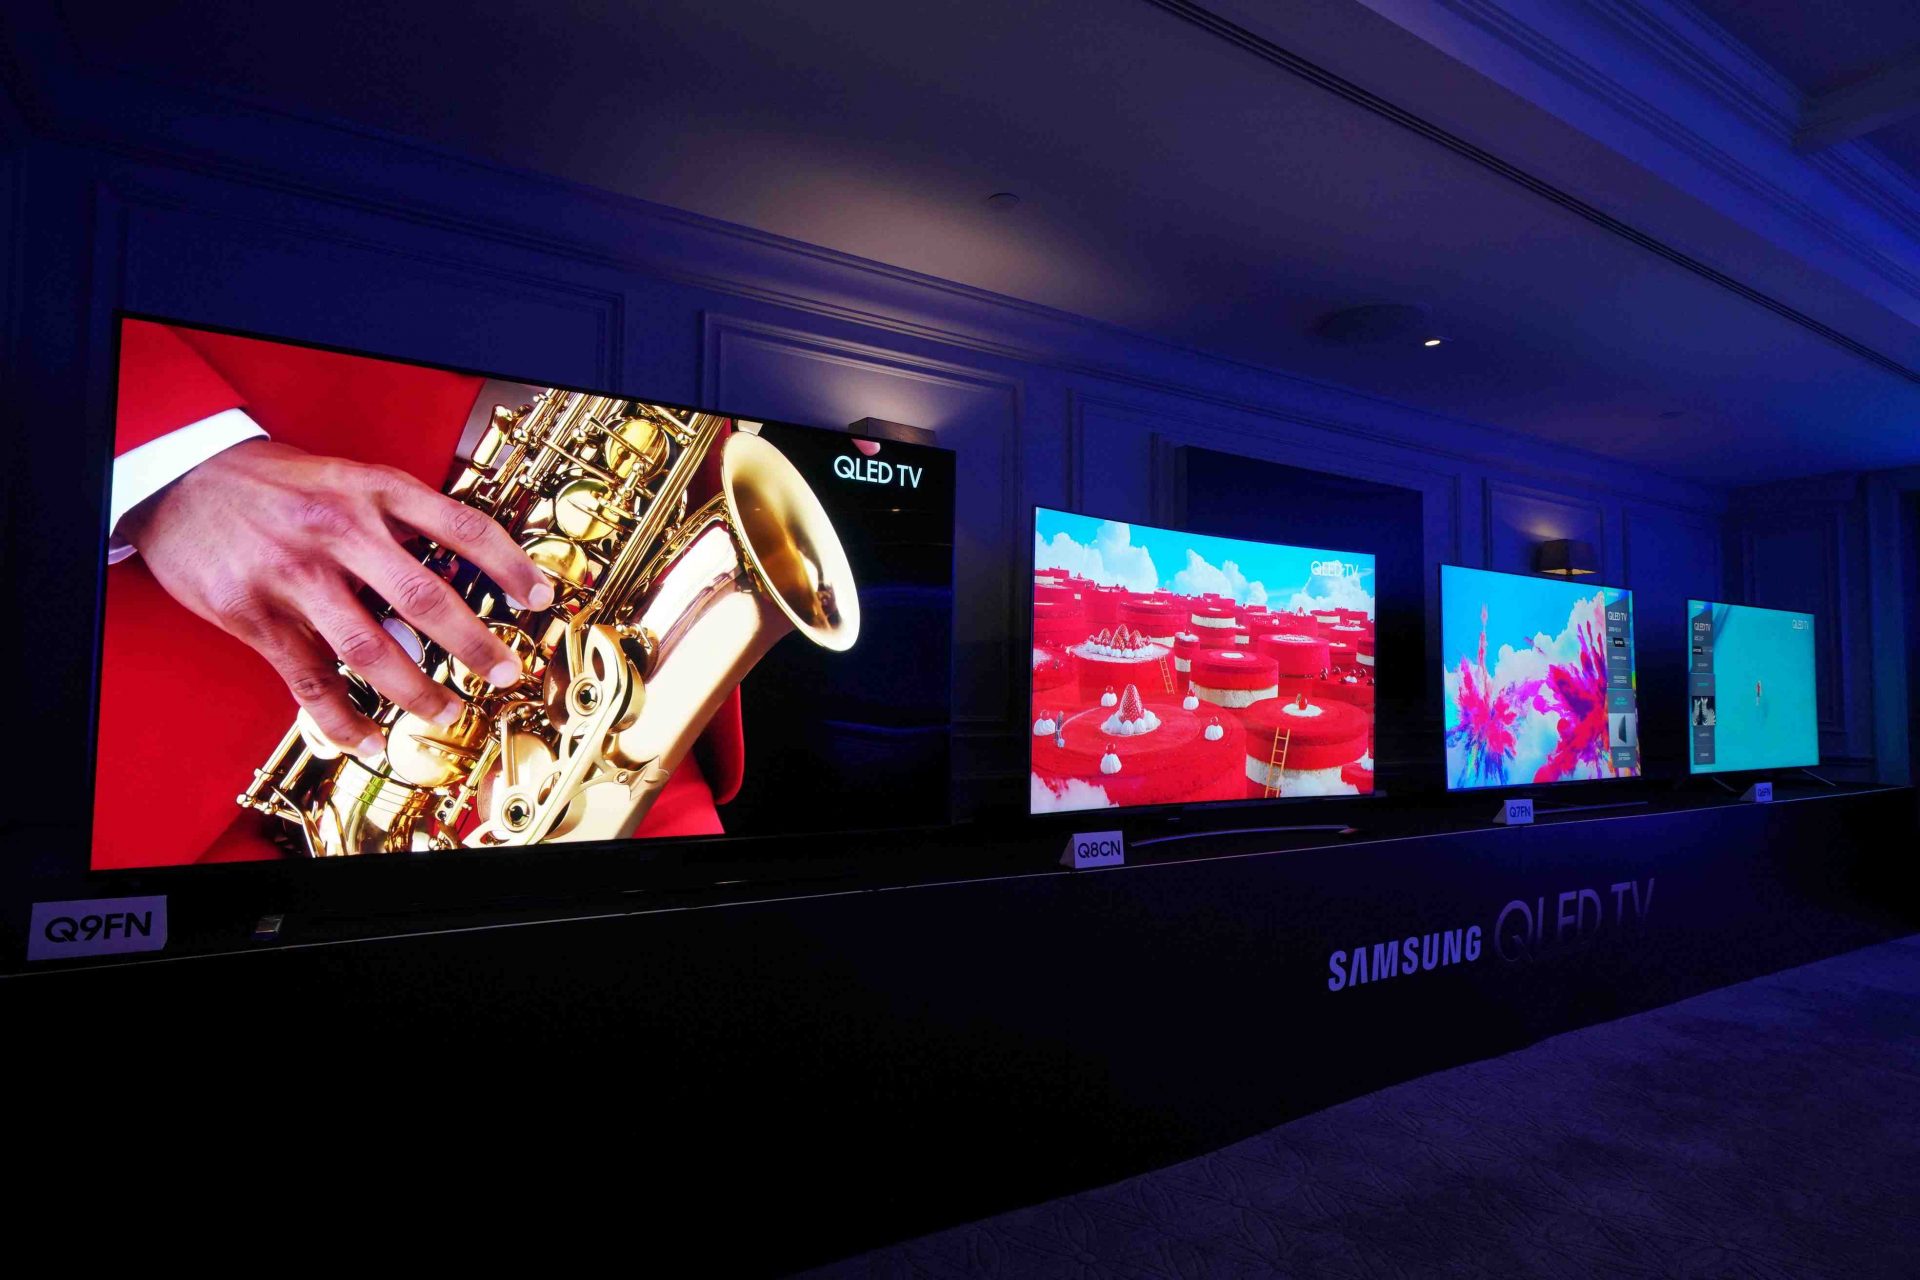 เจาะลึกรายละเอียดความสามารถของ Samsung QLED TV มีอะไรเหนือกว่าทีวีทั่วไปบ้าง